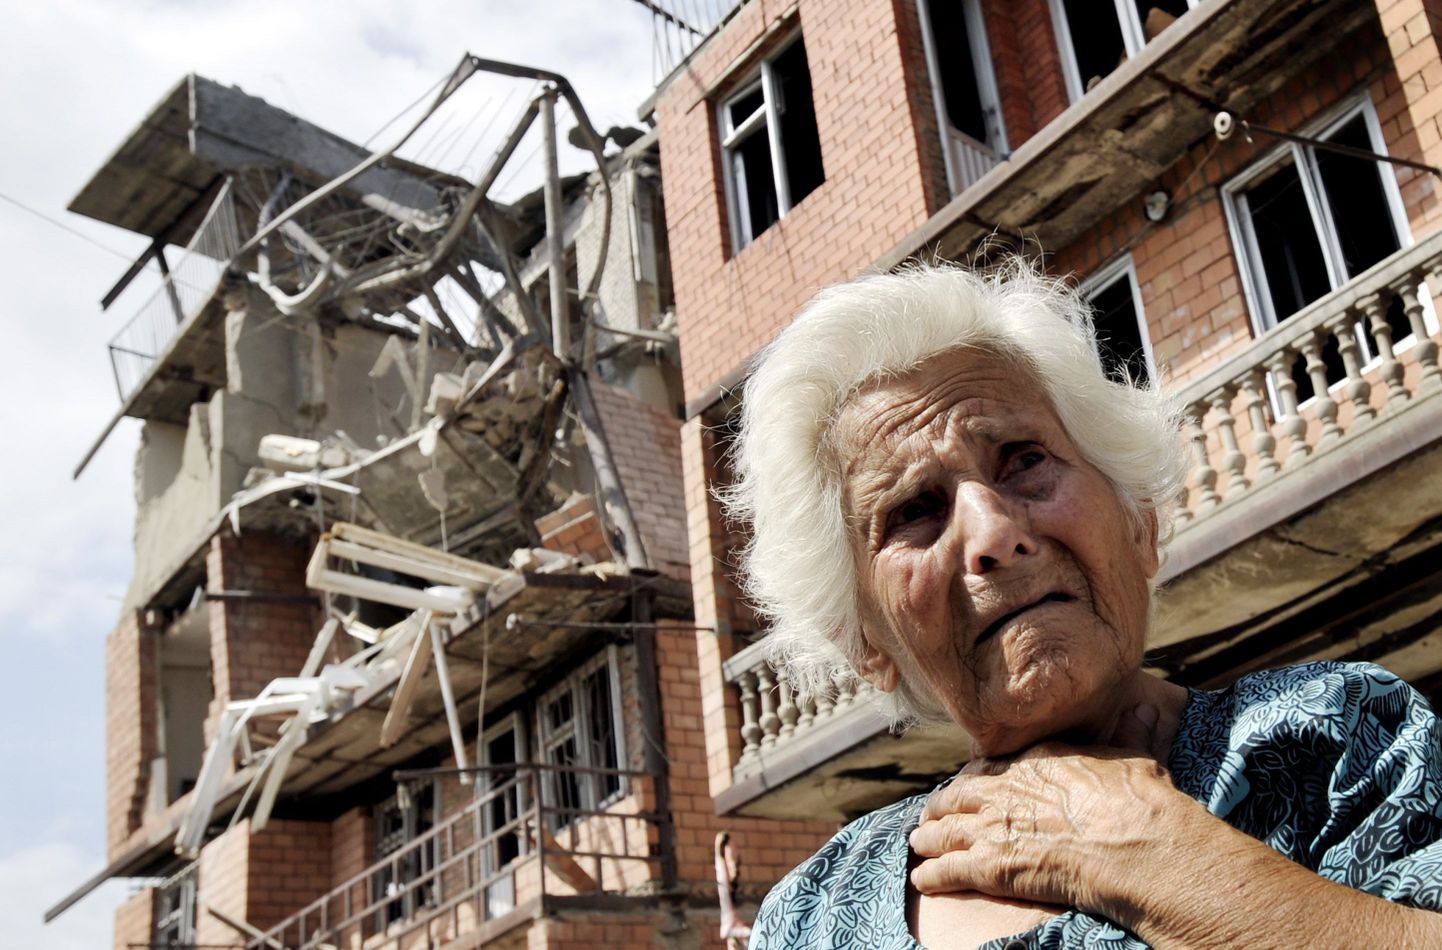 Gruusia naine nutmas täna oma purustatud koduamaja ees Goris.